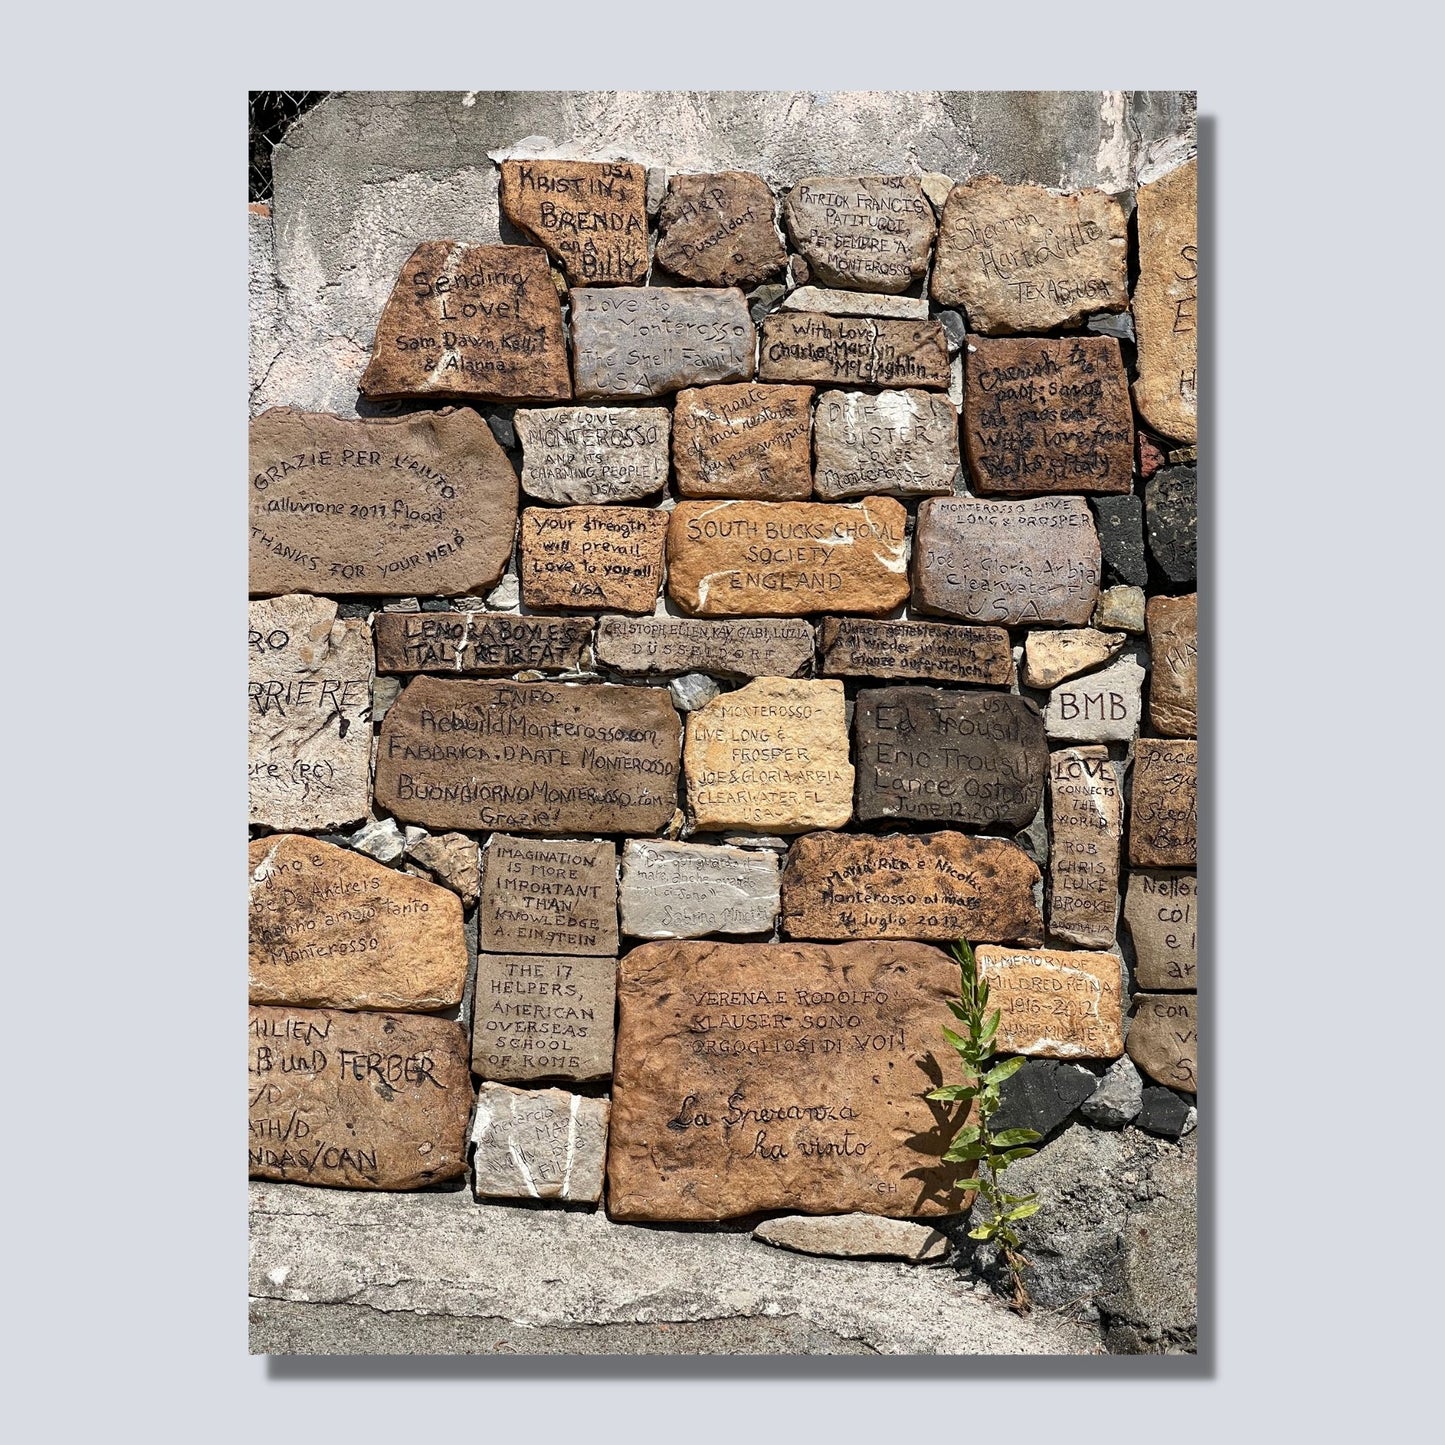 Denne muren ligger ved stien langs sjøen ved Montereosso al Mare, en av de fem byene i Cinque Terre ved Liguriakysten i Italia. Monterosso ligger lengst vestover av de 5 byene. Denne muren er dekorert med hilsener og inskripsjoner fra tilreisende. Plakaten er på dette bildet på lerretsduk.